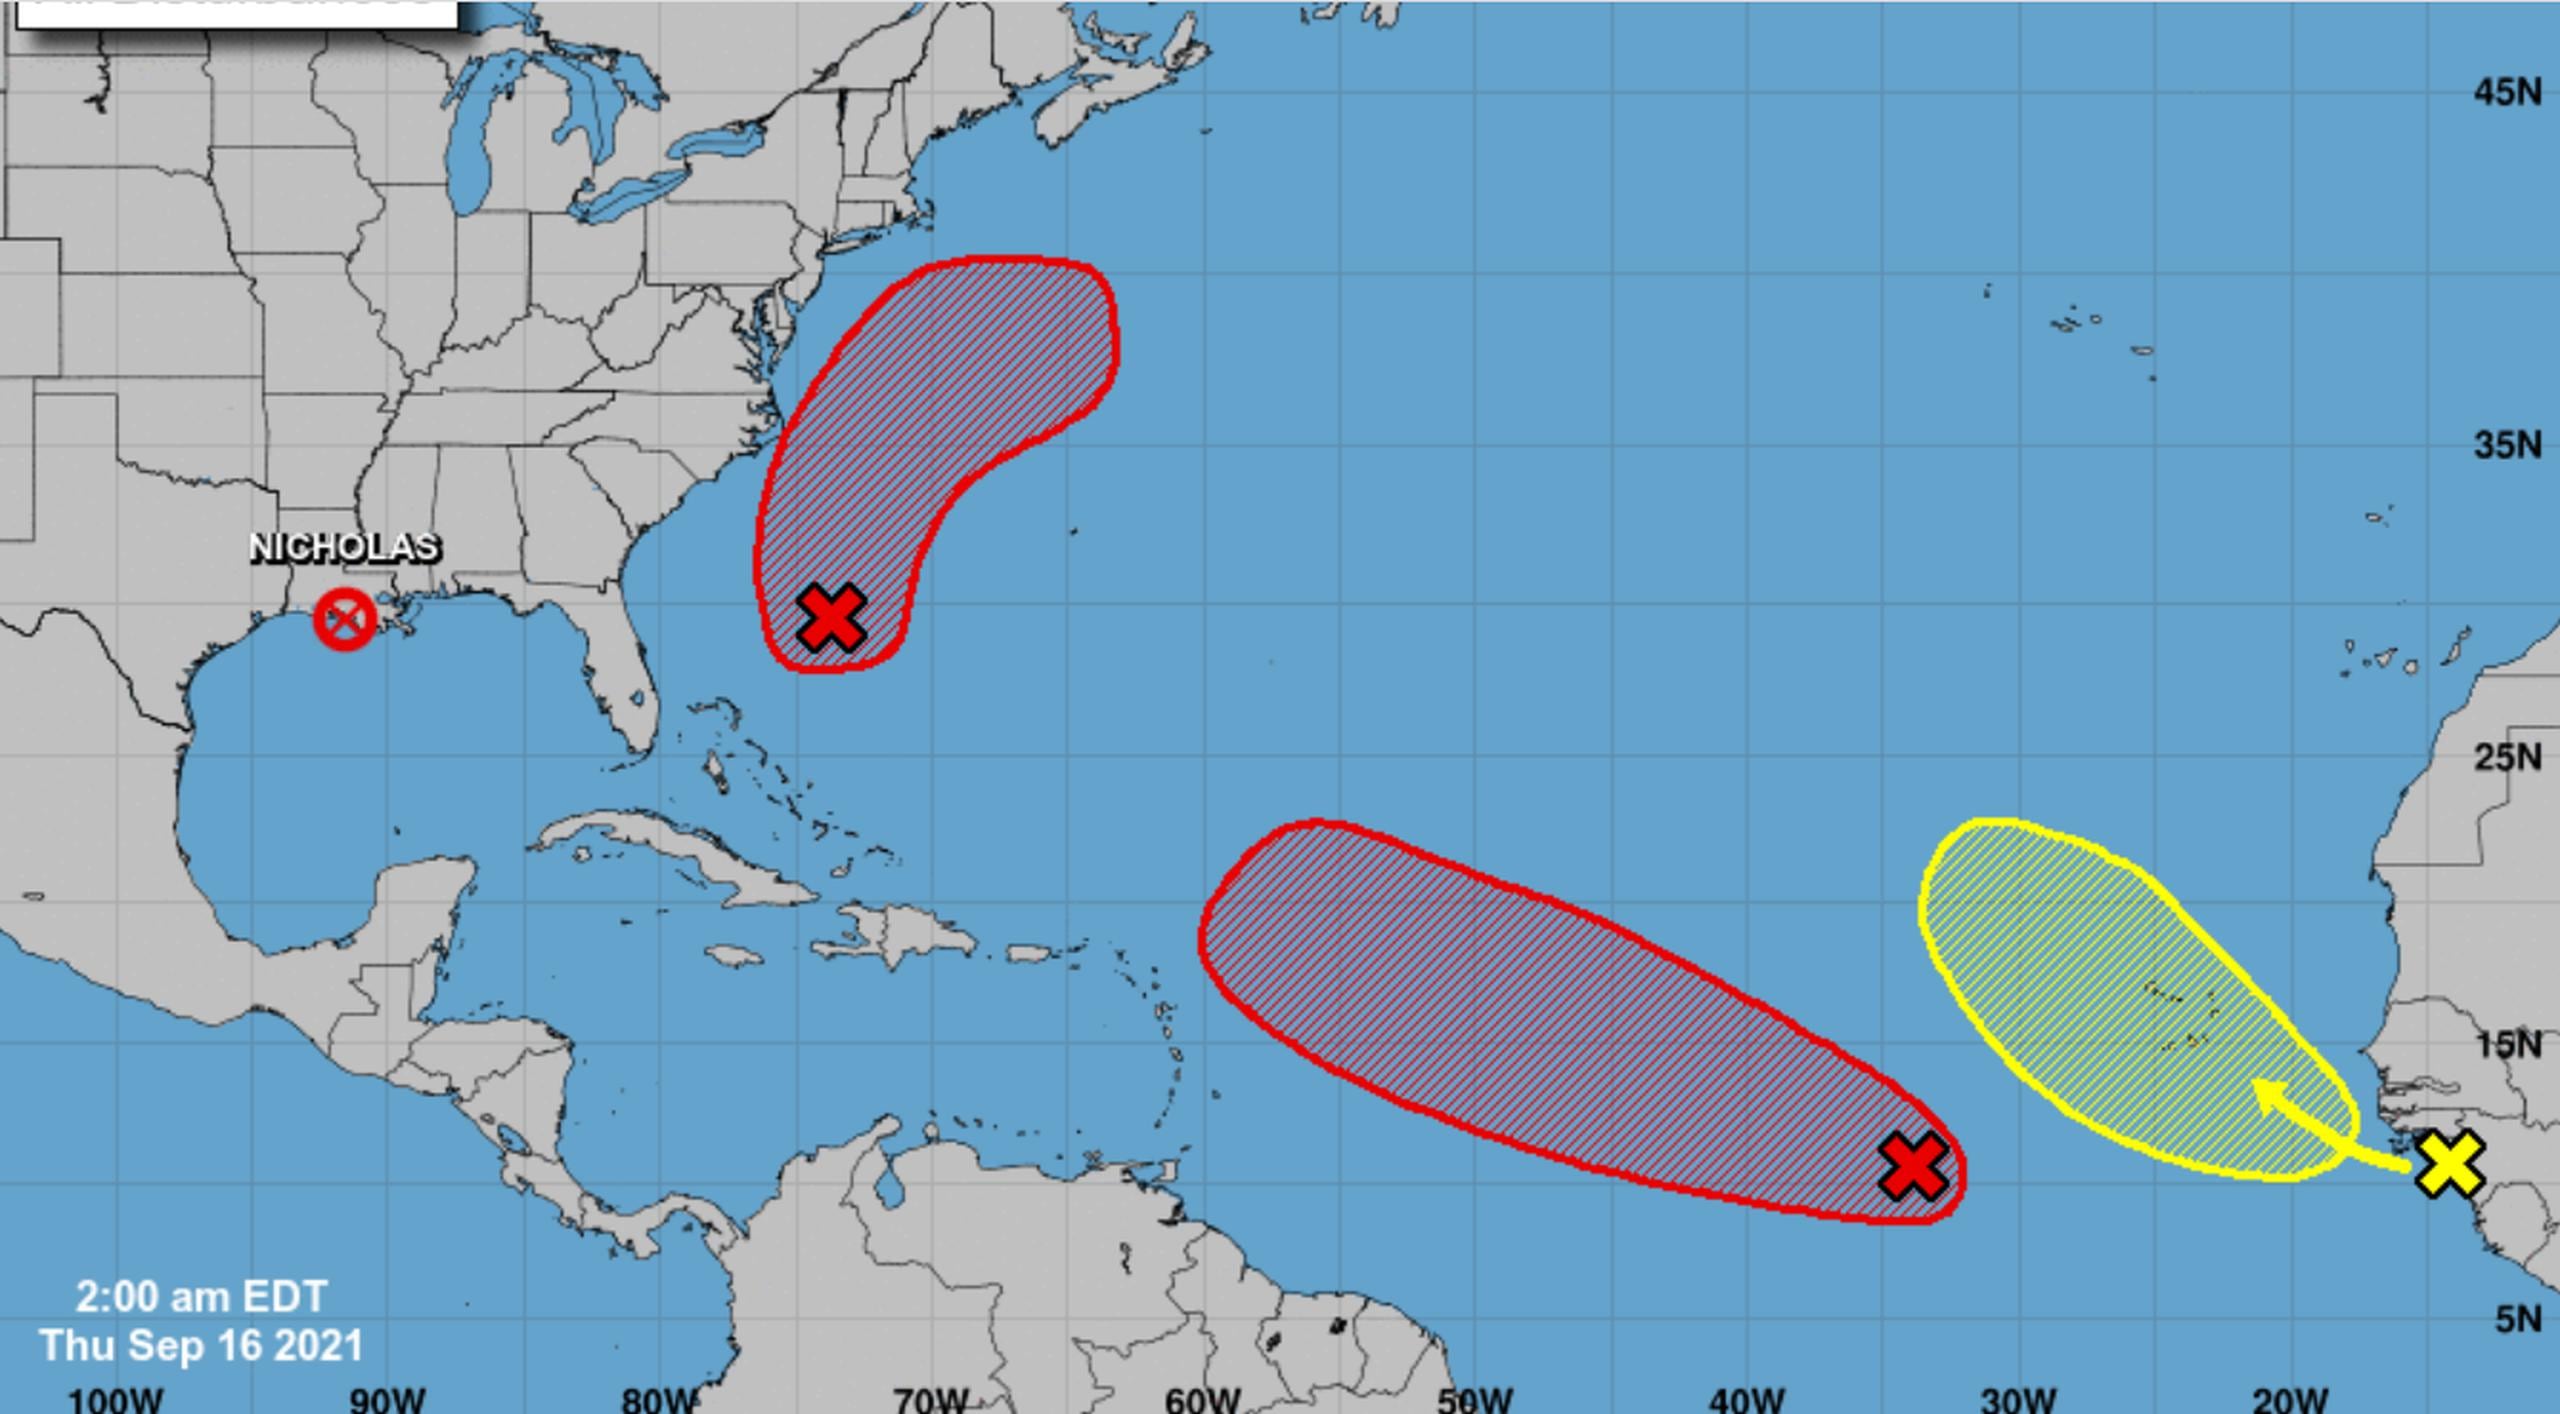 La agencia pronostica que el sistema se moverá hacia el oeste al oeste-noroeste a través del Atlántico tropical durante los próximos días.